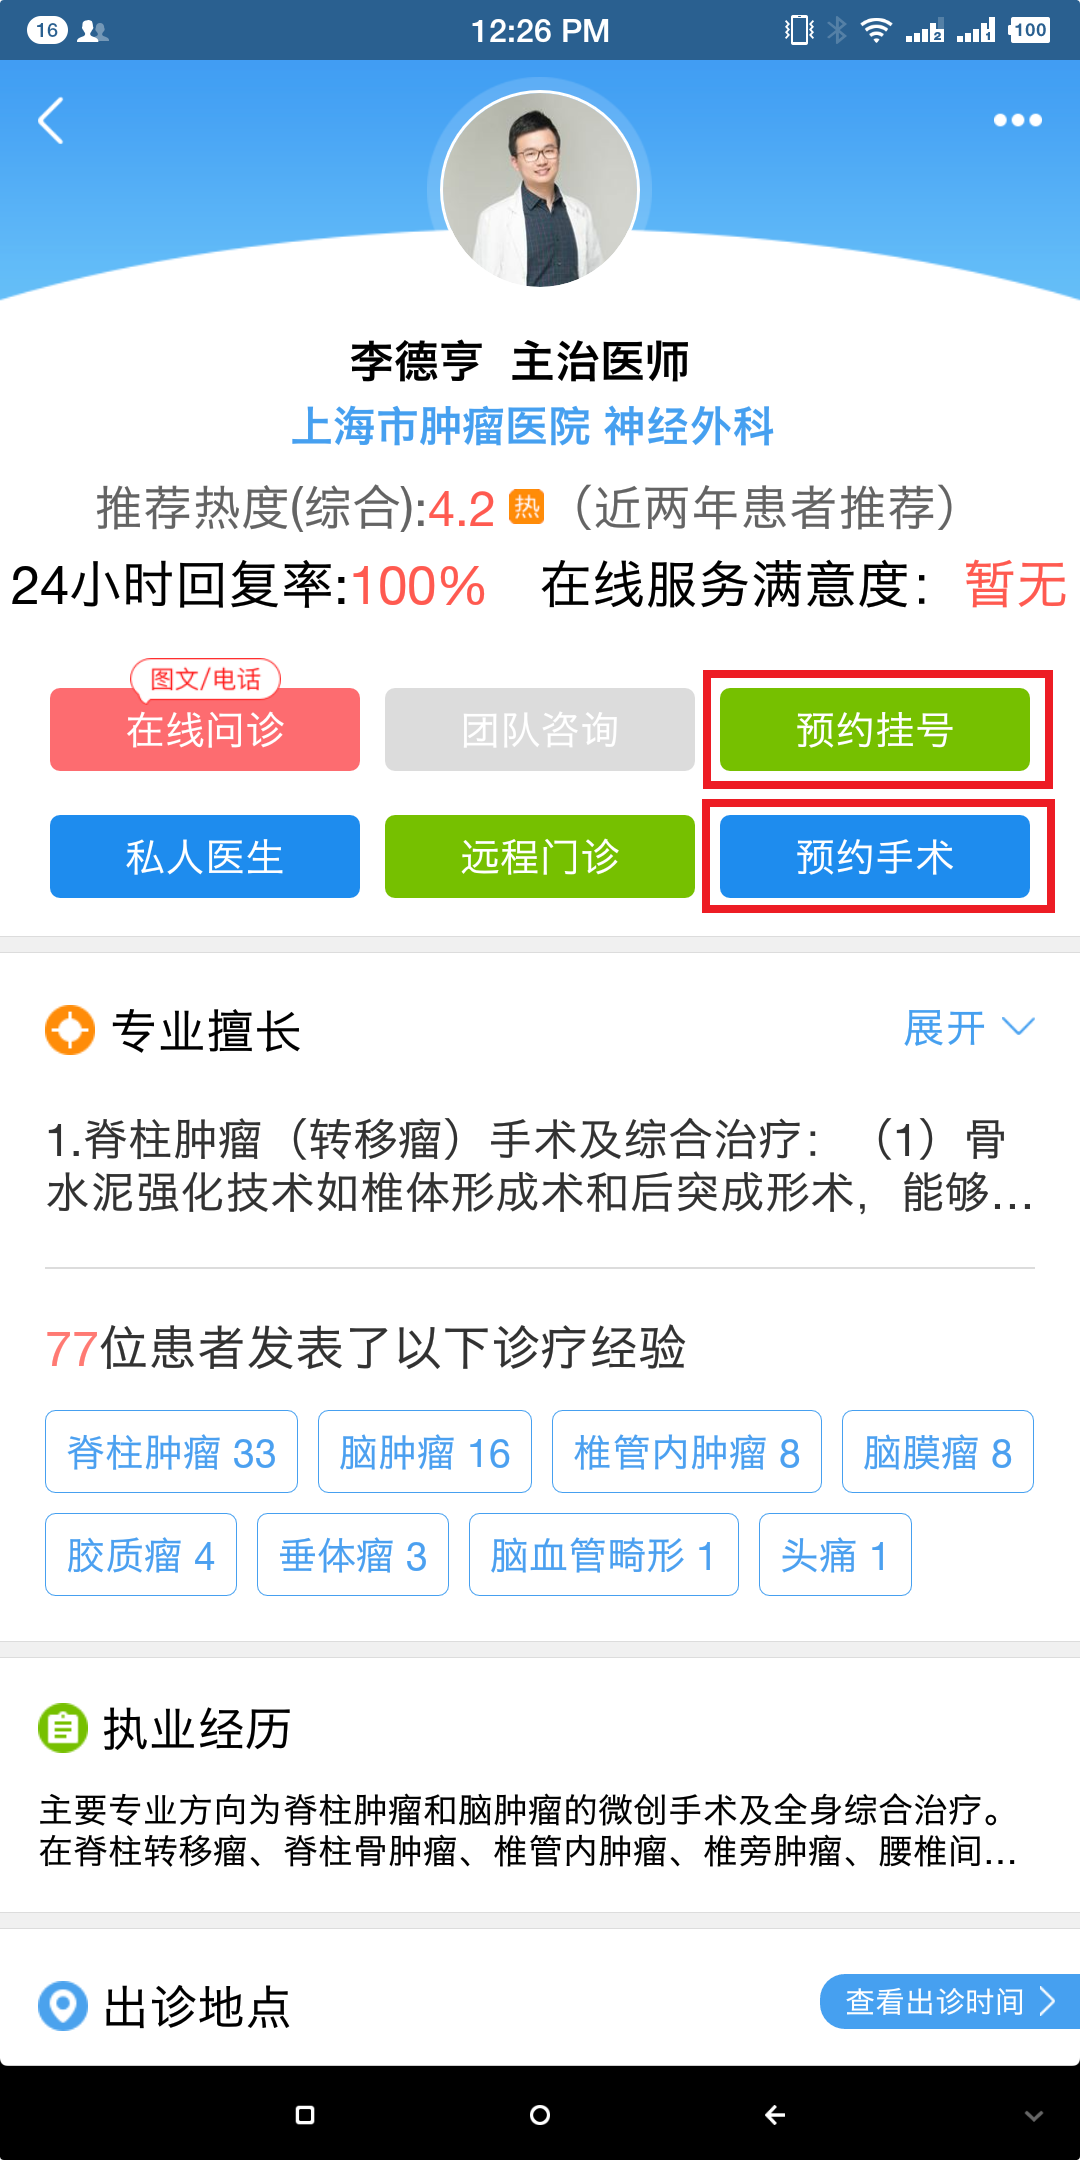 关于北京大学肿瘤医院黄牛办理住院，跑腿挂号24小时服务的信息